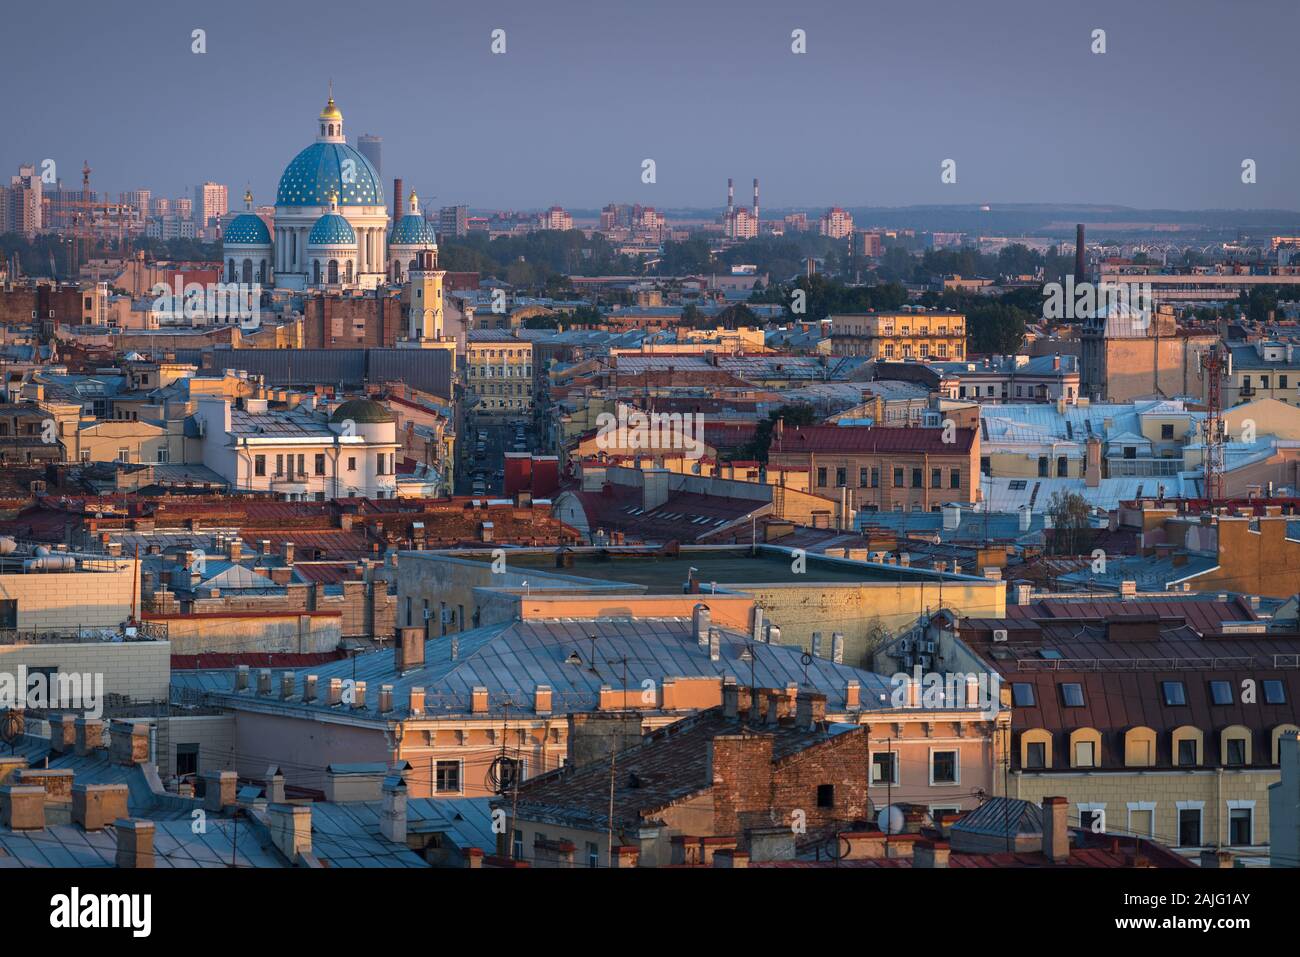 Antena de San Petersburgo ciudad: Catedral de la Trinidad (Catedral Troitsky) en San Petersburgo, Rusia, a finales ejemplo de estilo Imperio, por Vasily Stasov Foto de stock